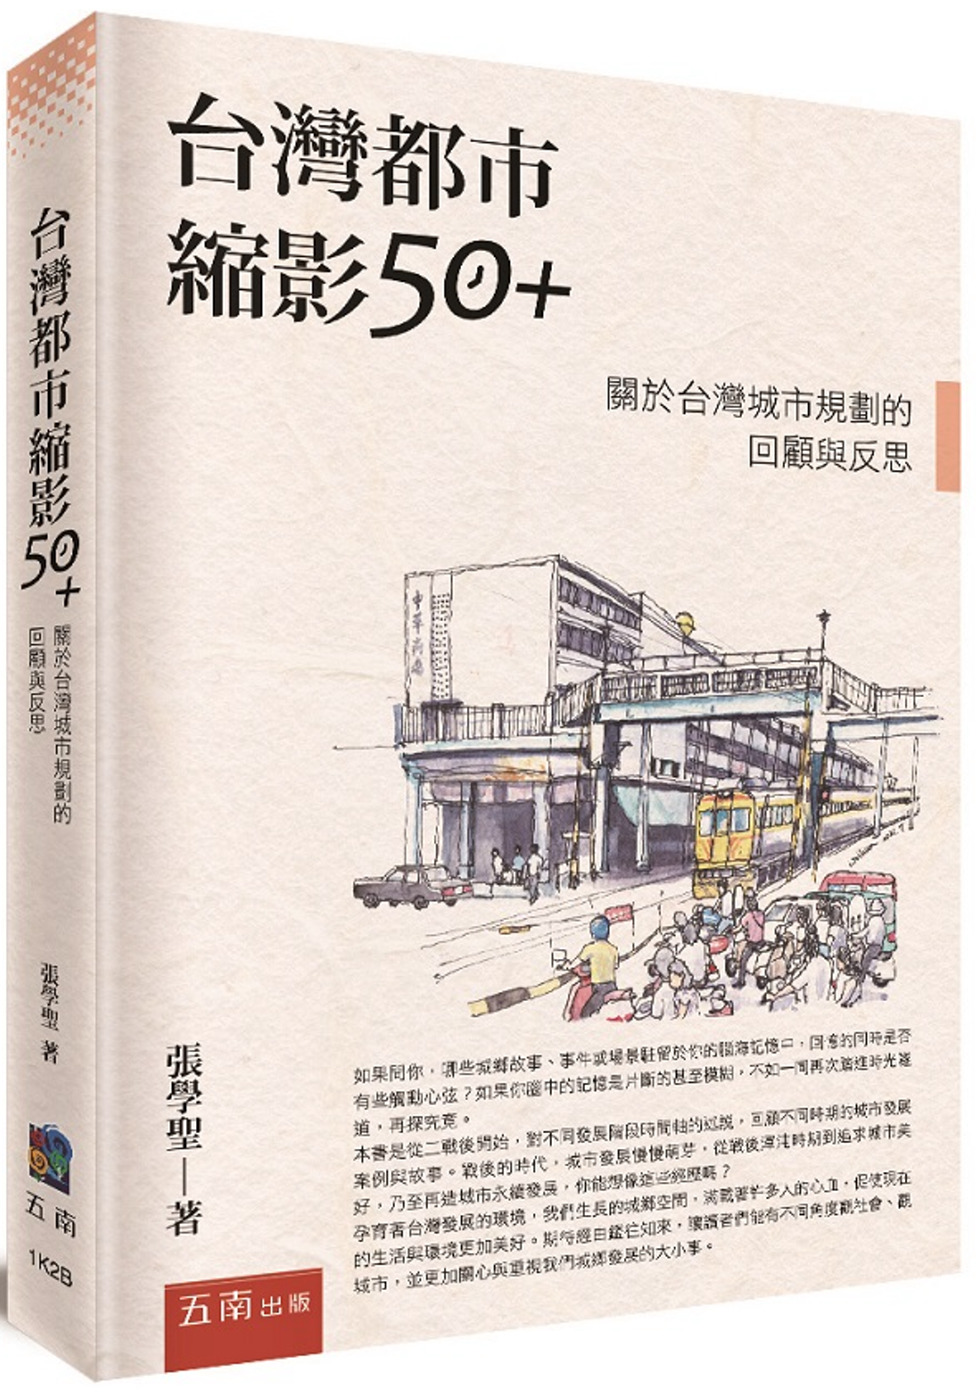 台灣都市縮影50+：關於台灣城市規劃的回顧與反思